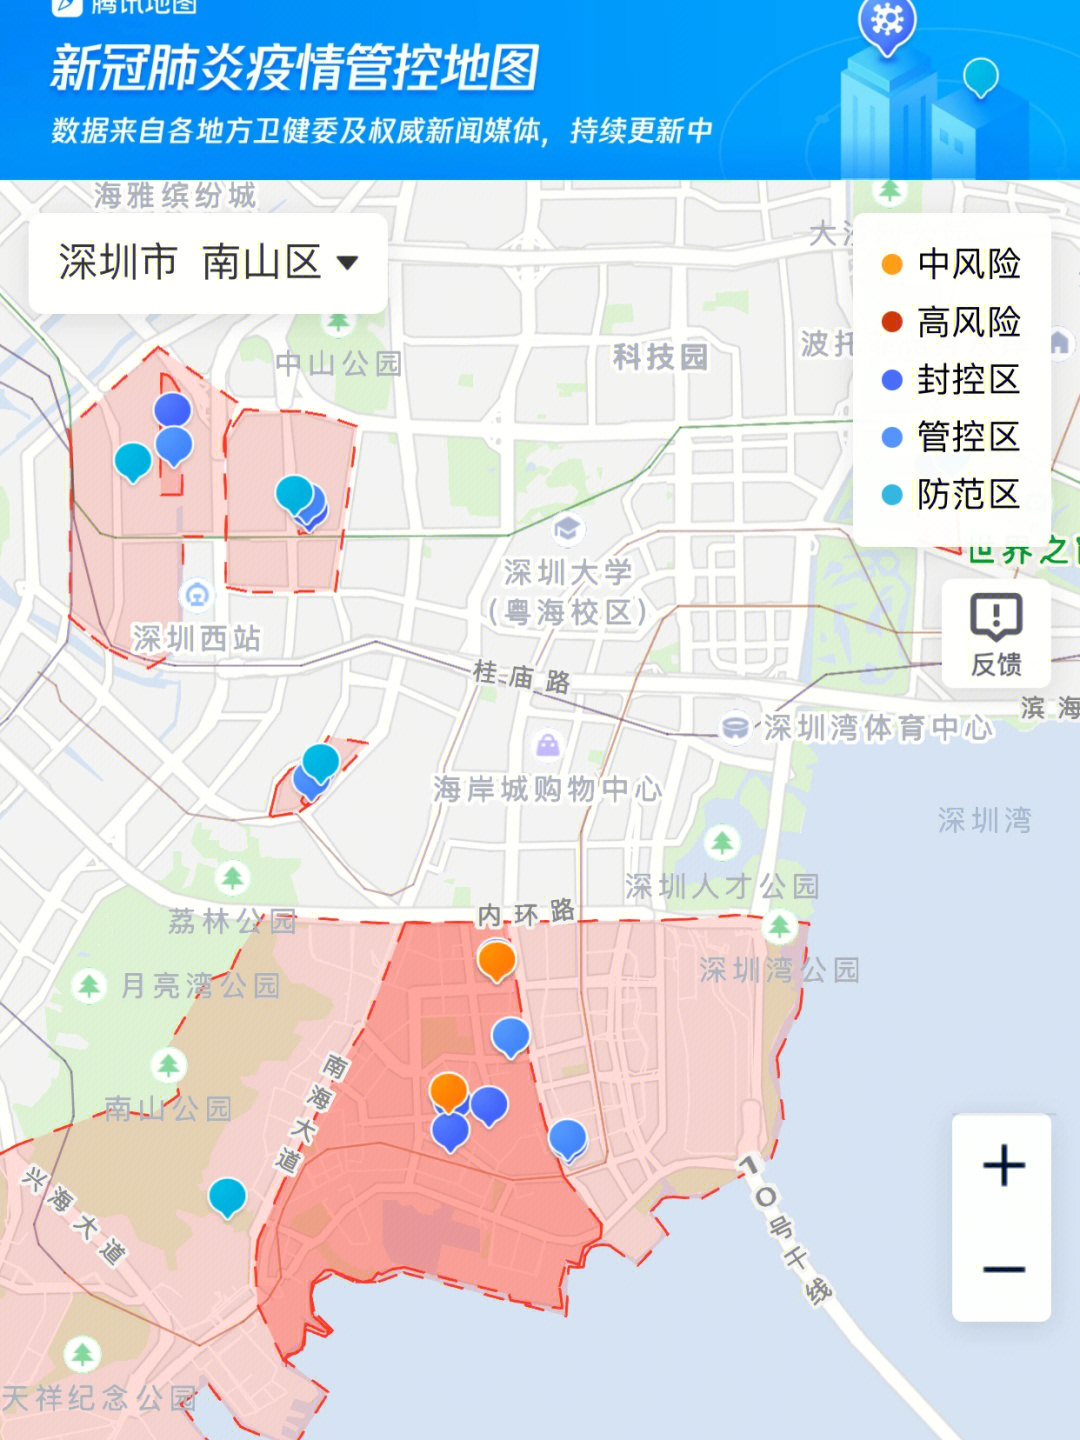 深圳防疫地图:查找封控区,管控区,防范区